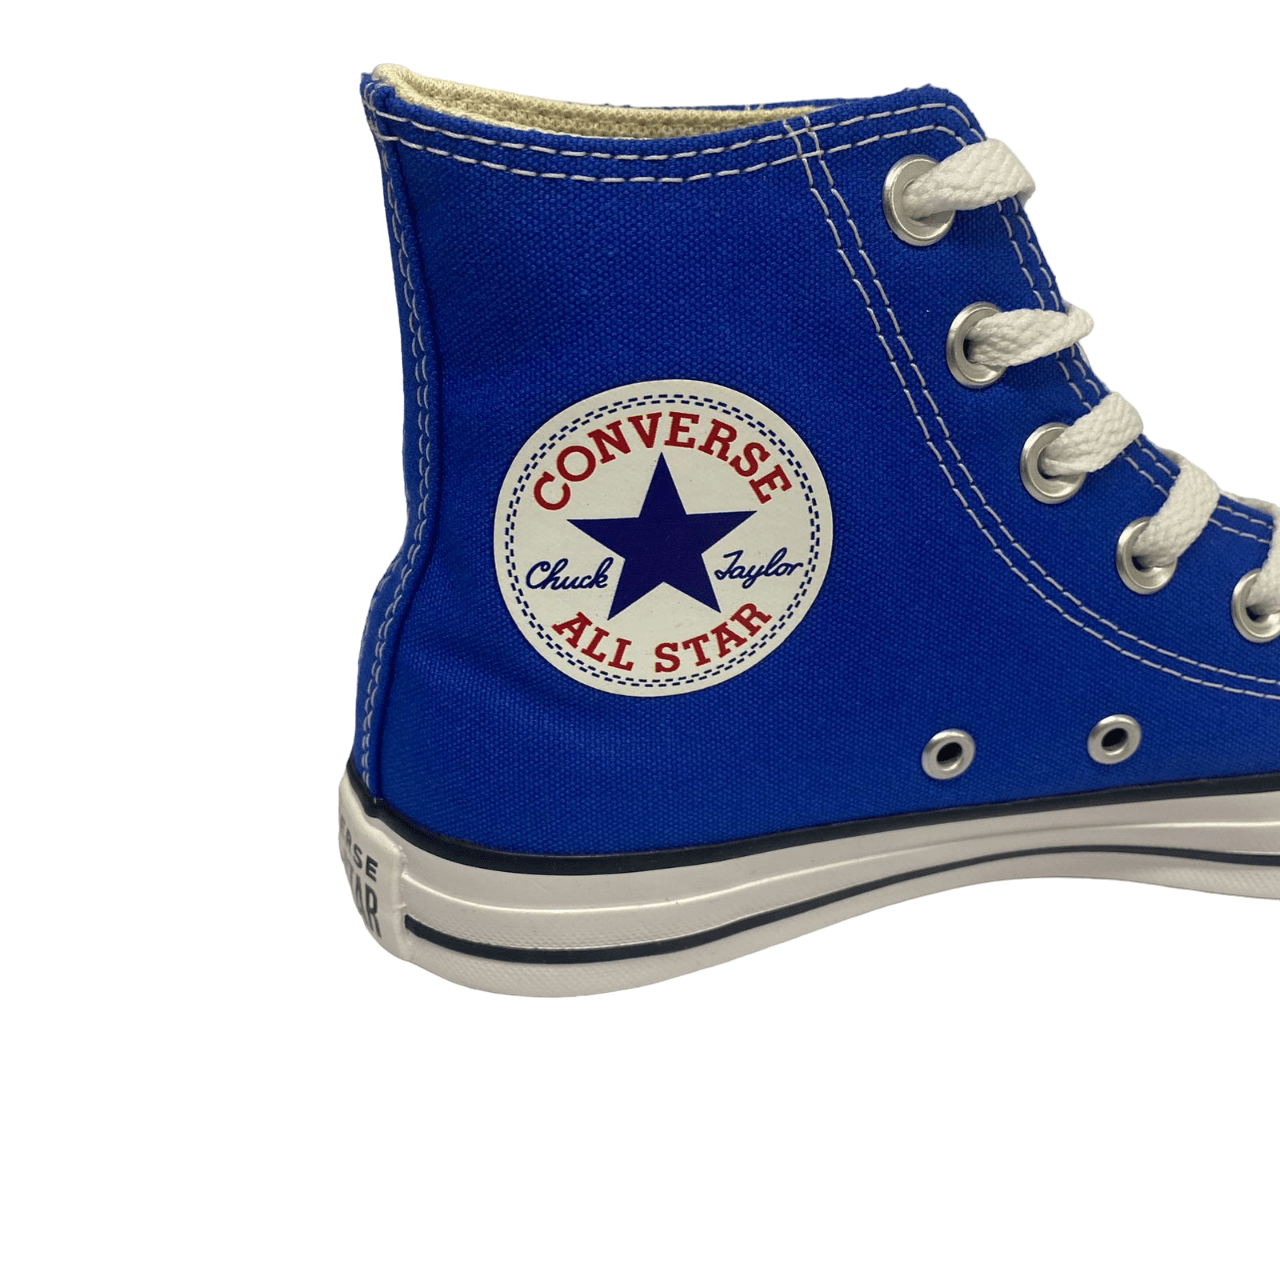 Tênis Converse Chuck Taylor All Star cano alto plataforma - Preto, Preto/azul,  11 Women/9 Men